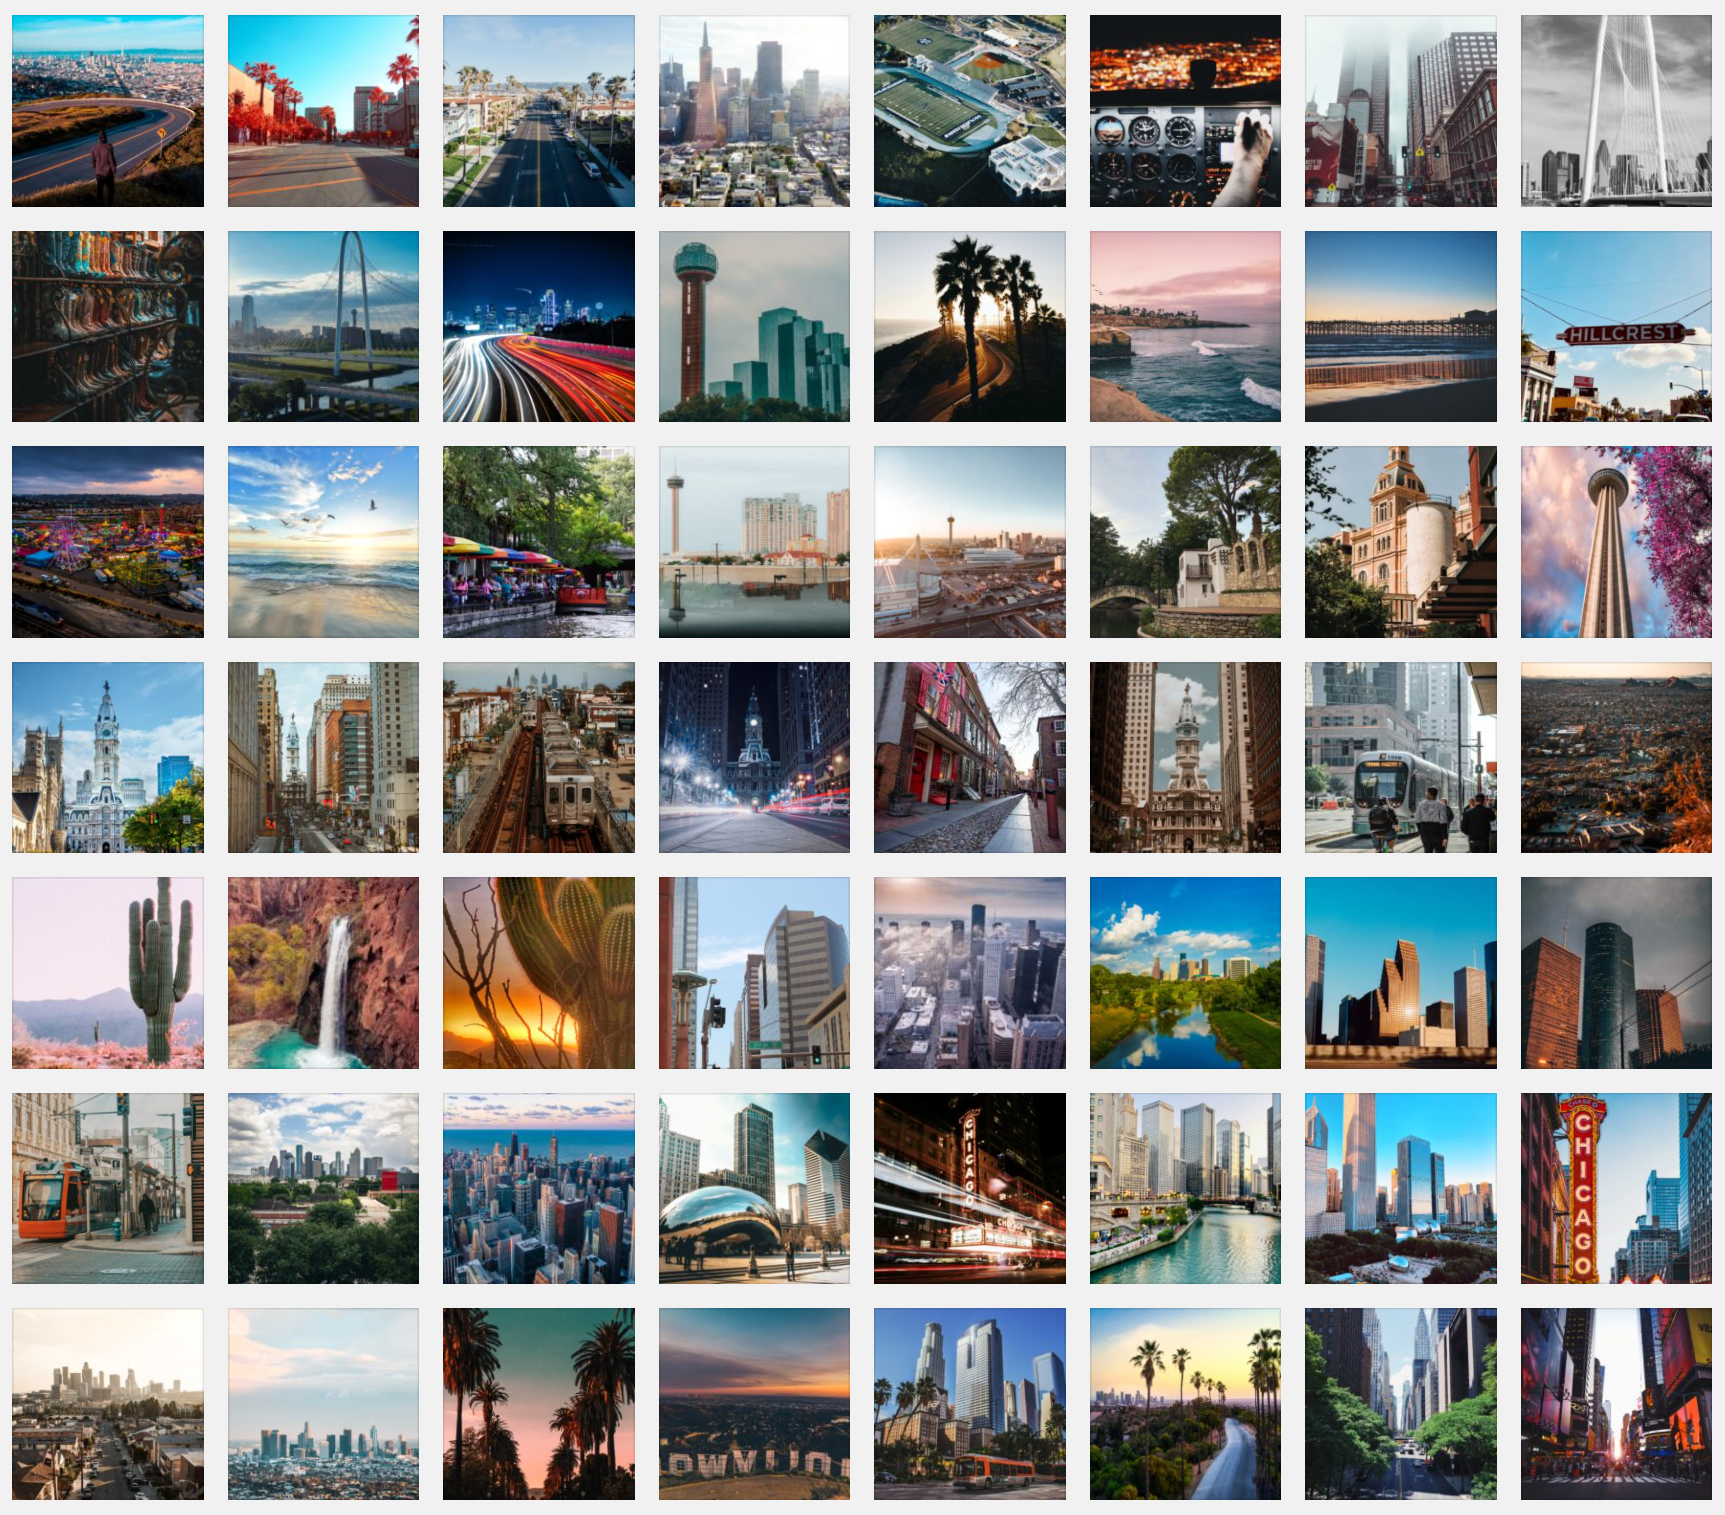 Voici les 10 plus belles villes américaines à mettre en fond d'écran sur Teams